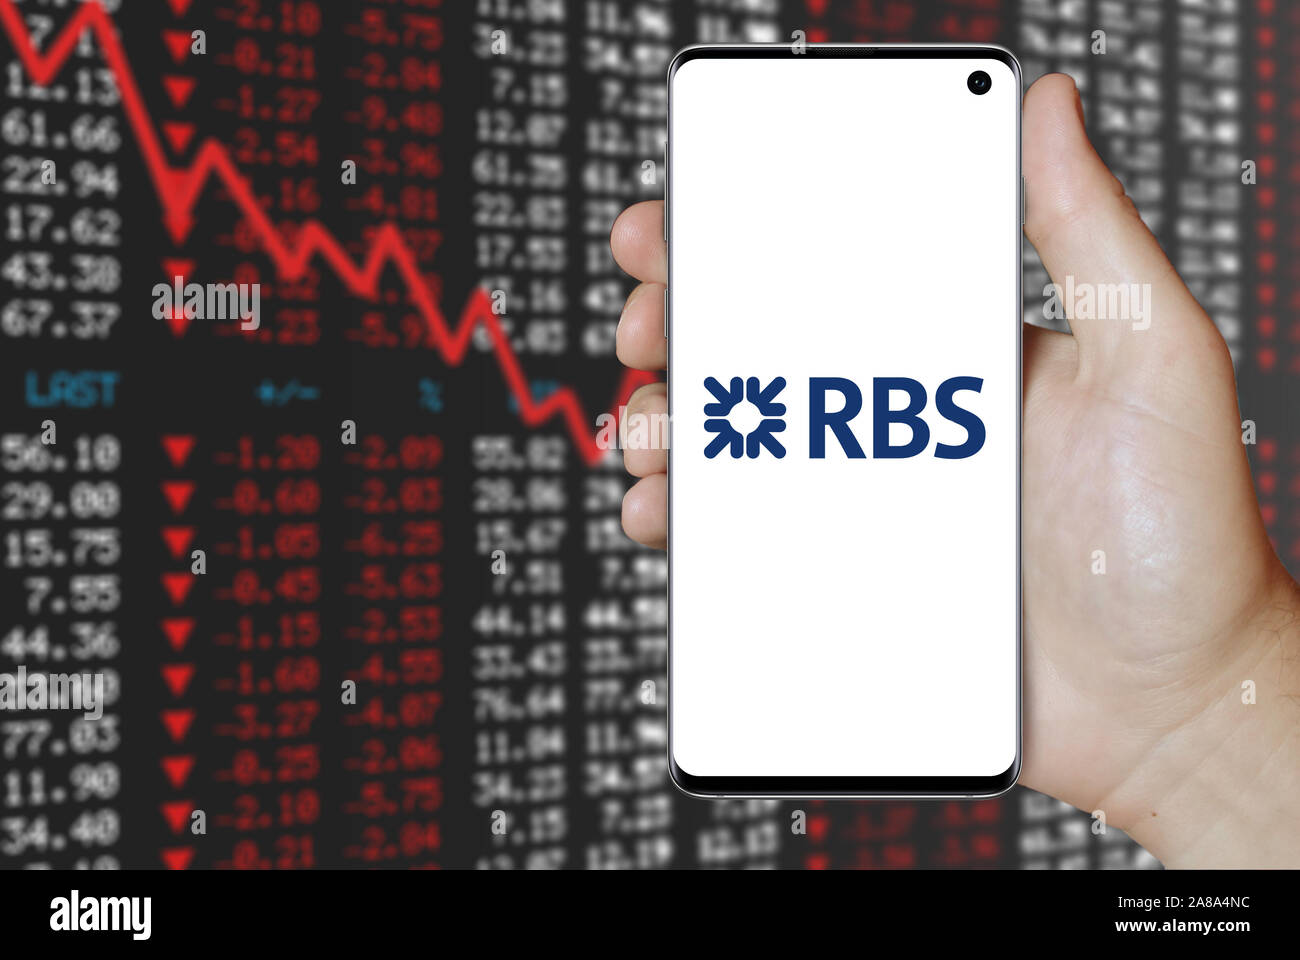 Logo de compagnie publique Royal Bank of Scotland Group affiche sur un smartphone. Contexte du marché boursier négatif. Credit : PIXDUCE Banque D'Images